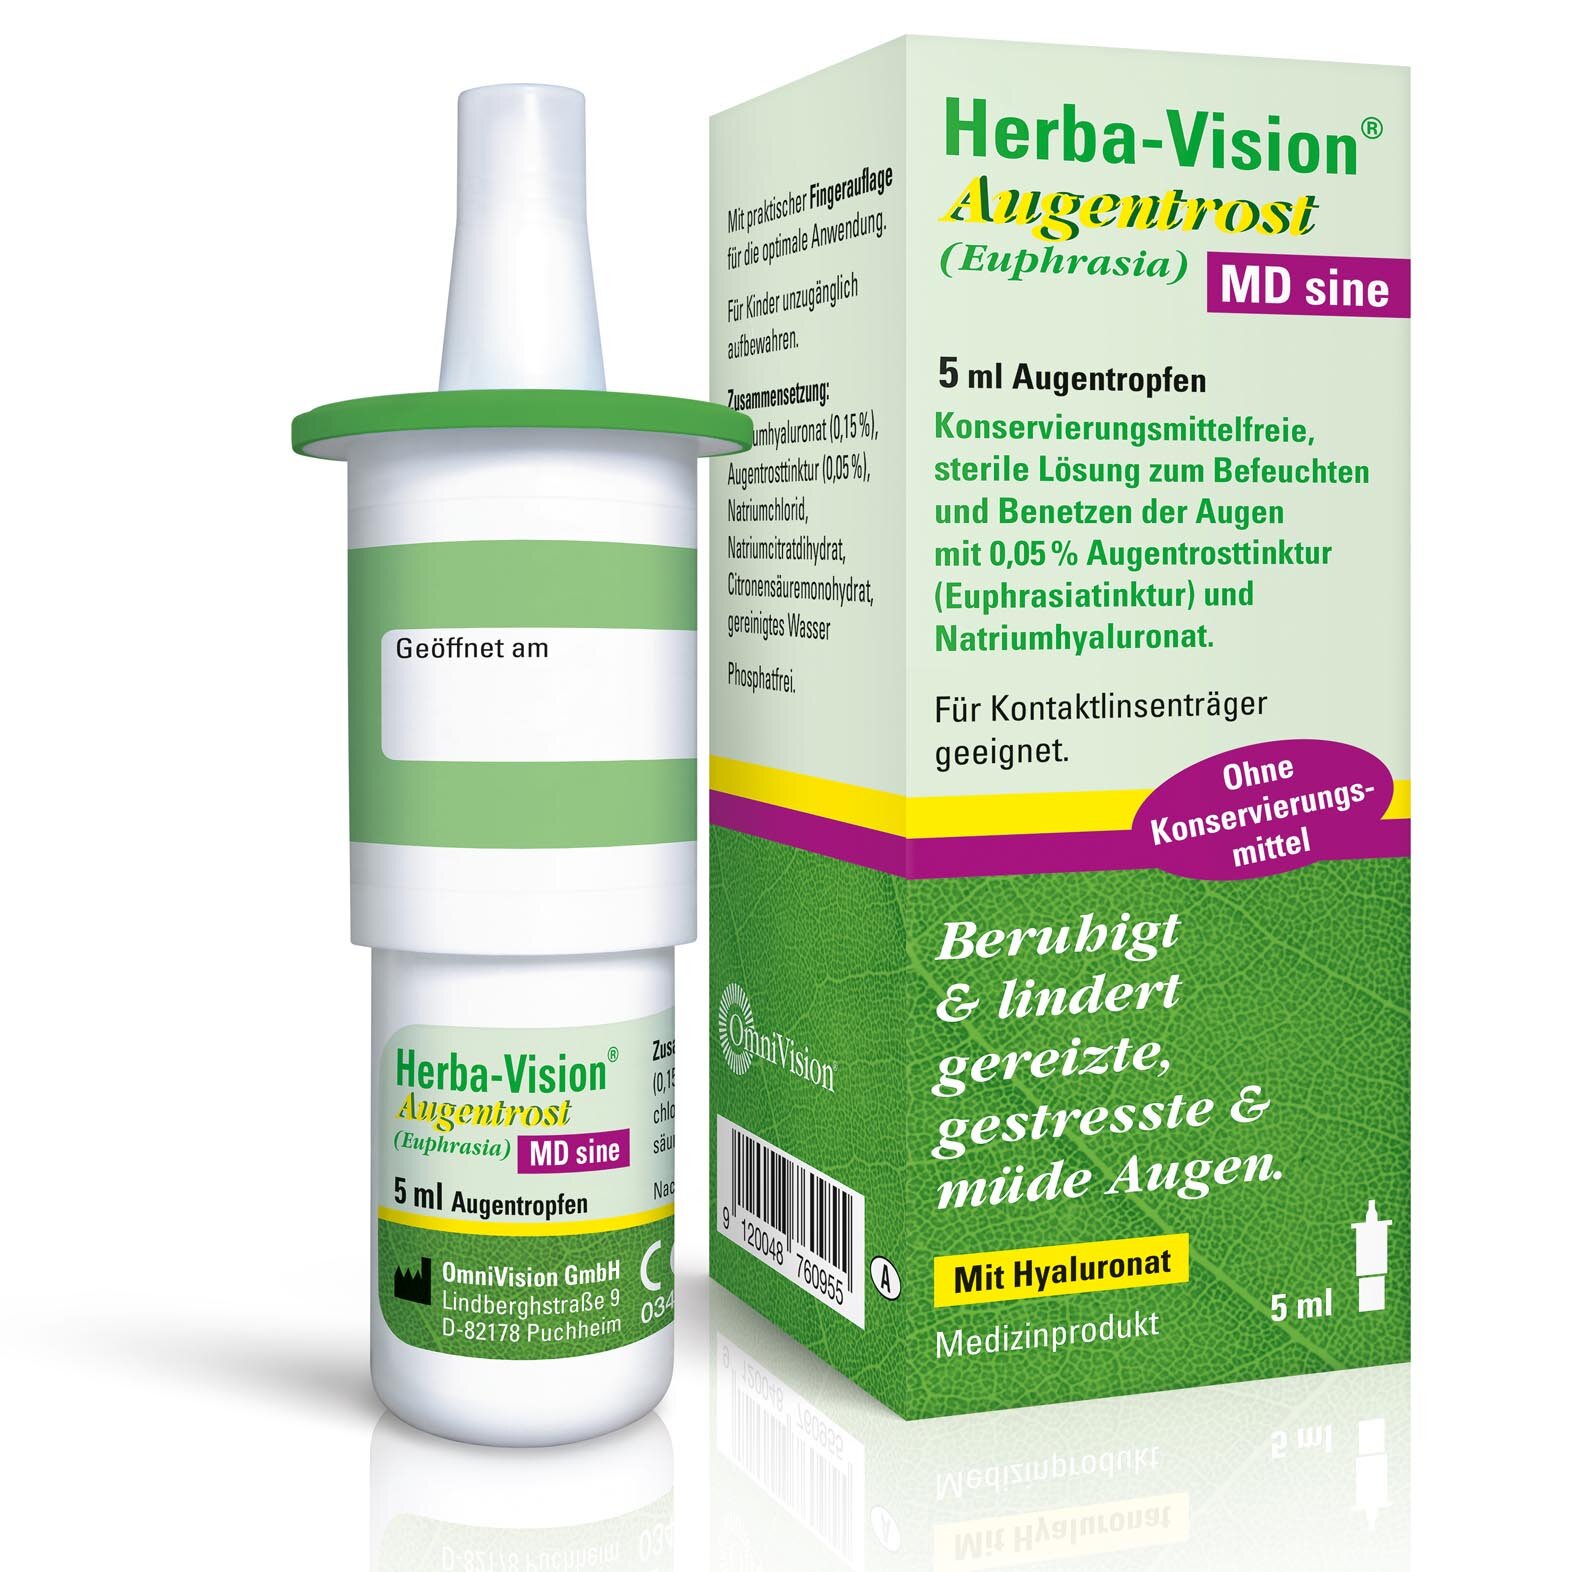 Herba Vision Augentrost MD sine